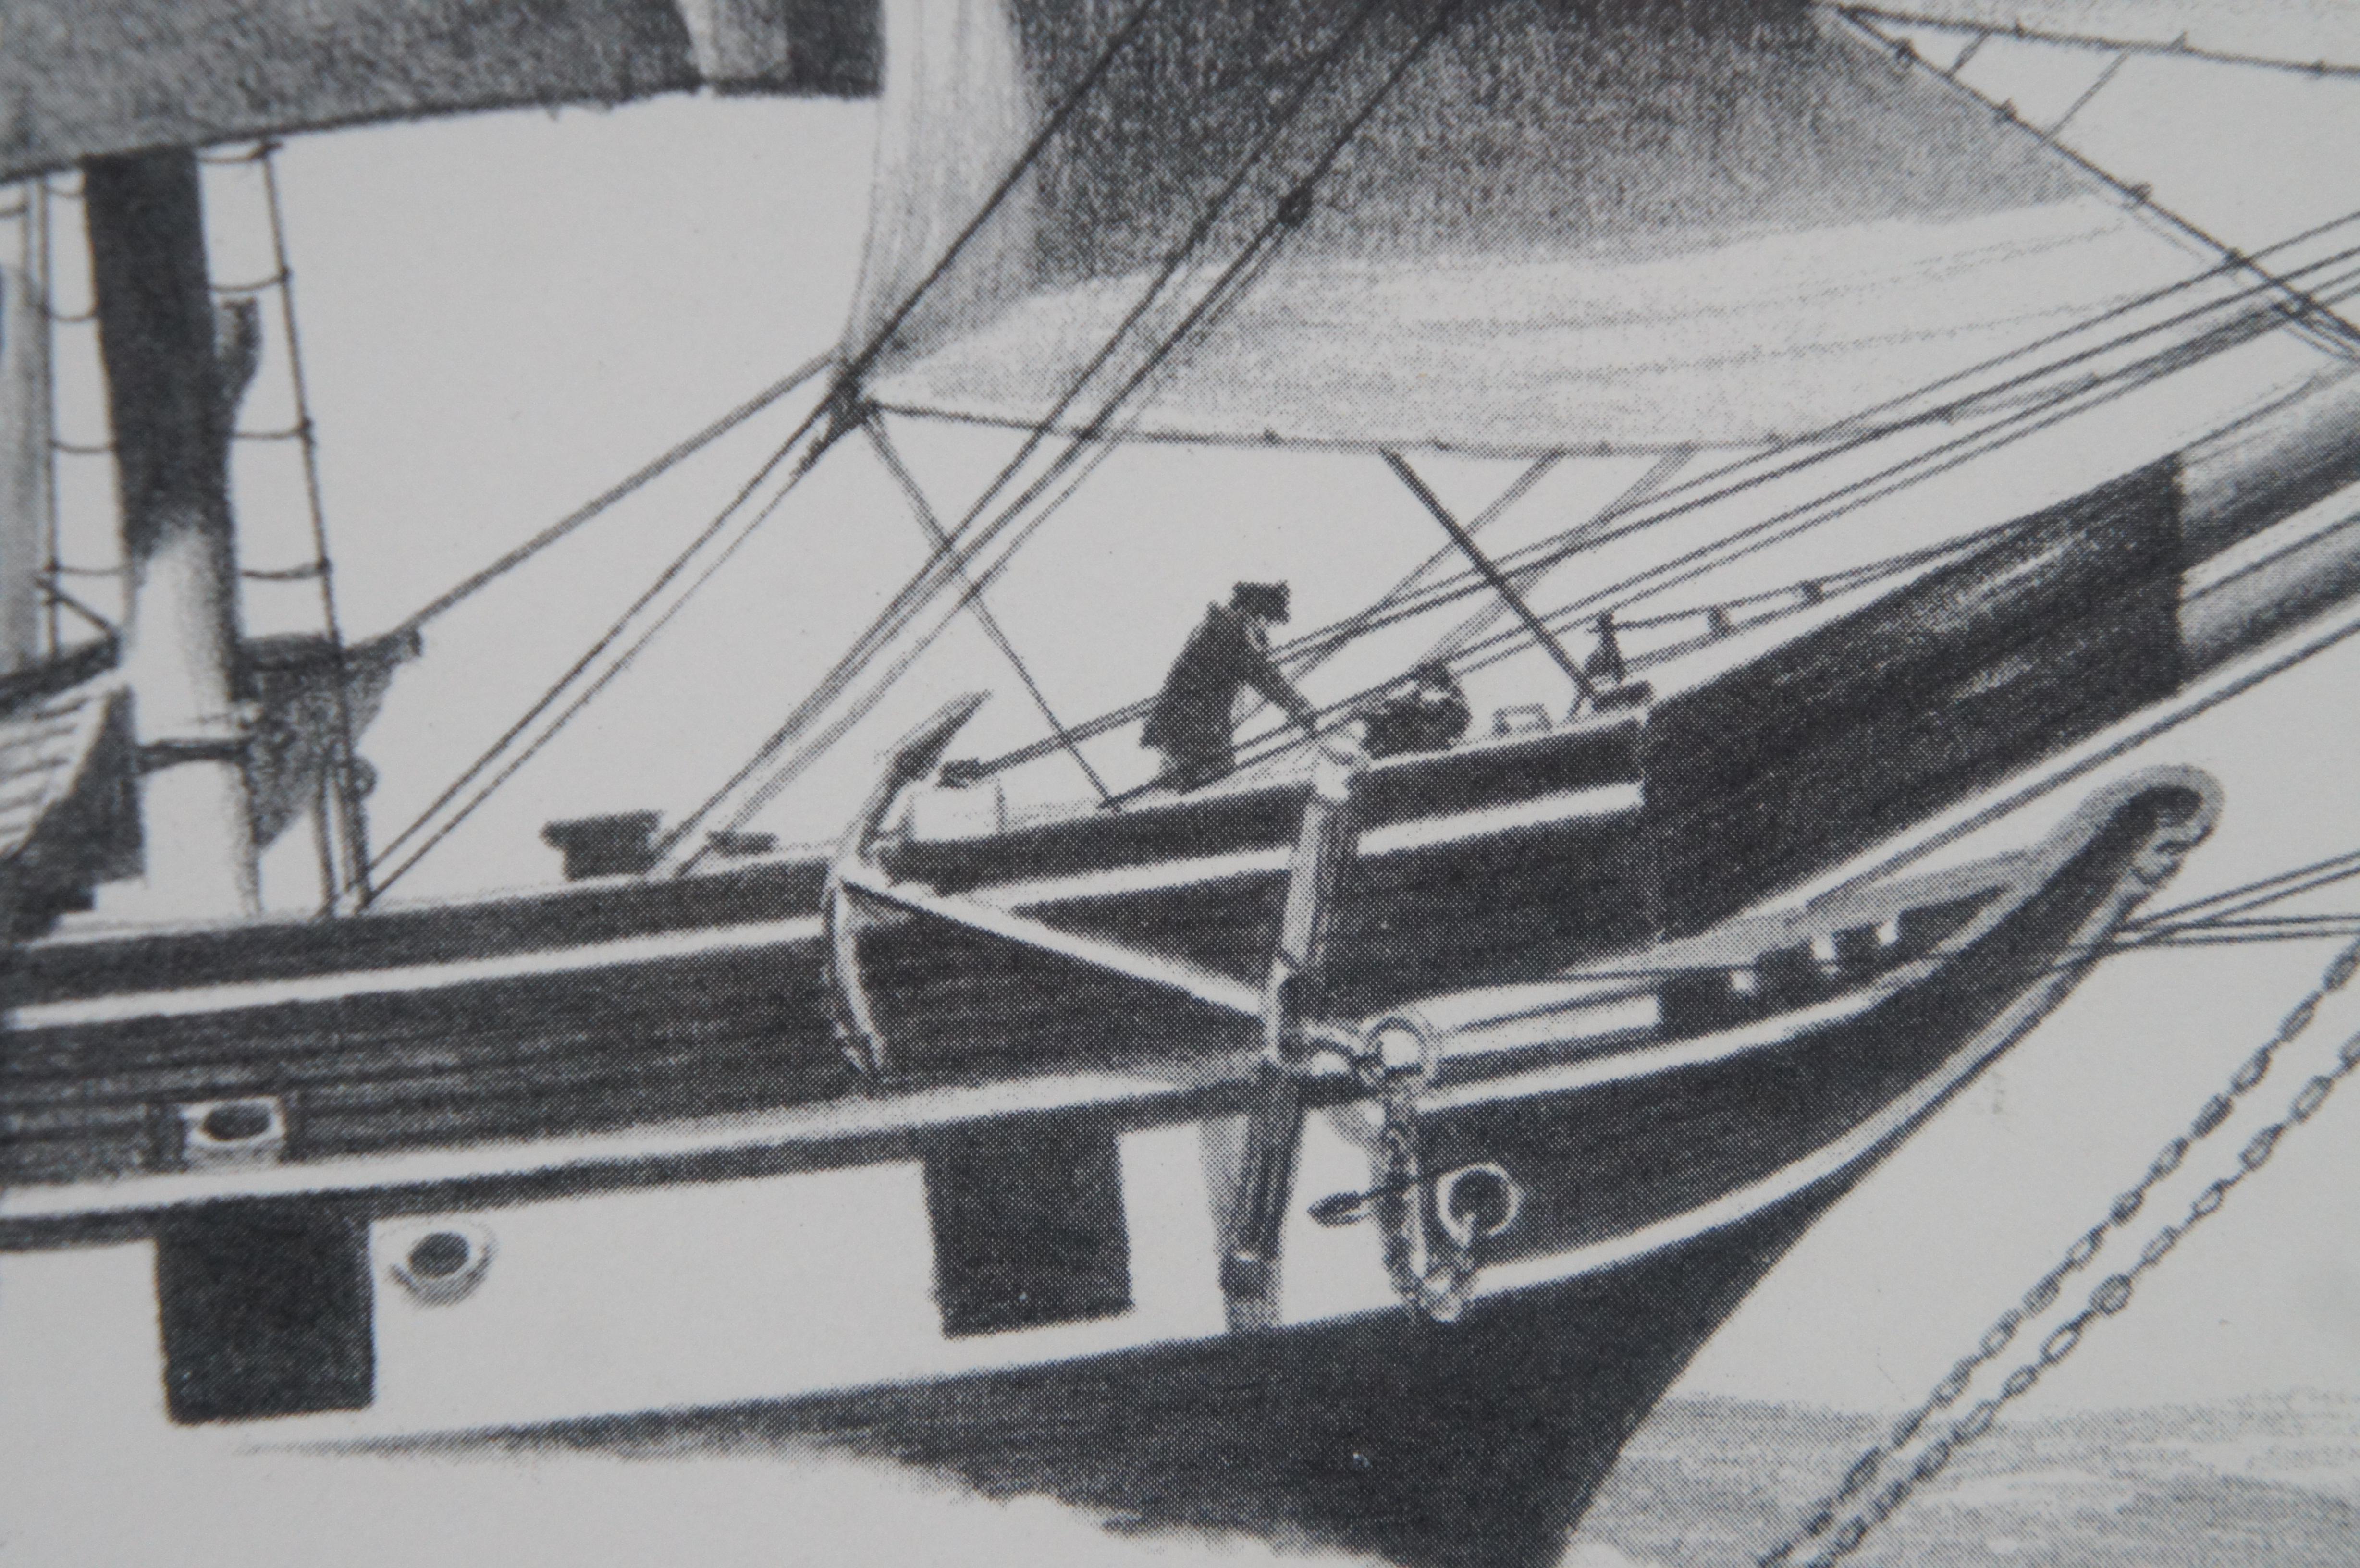 Der Walfänger Charles W. Morgan Nautische maritime Lithographie Druck Lithographie Fowler 26